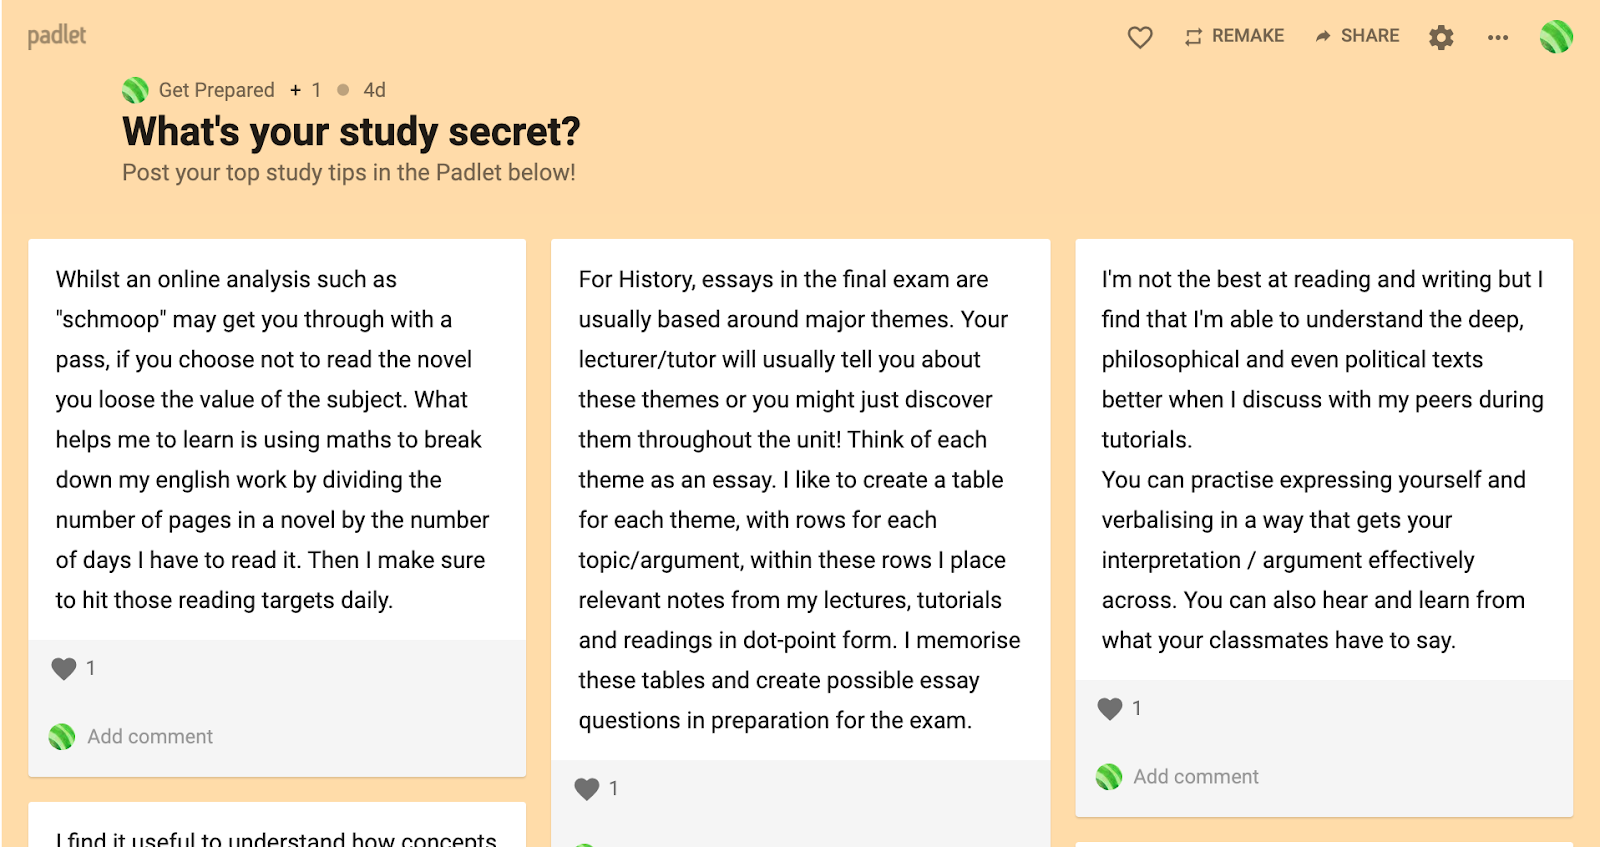 Padlet - What's your study secret